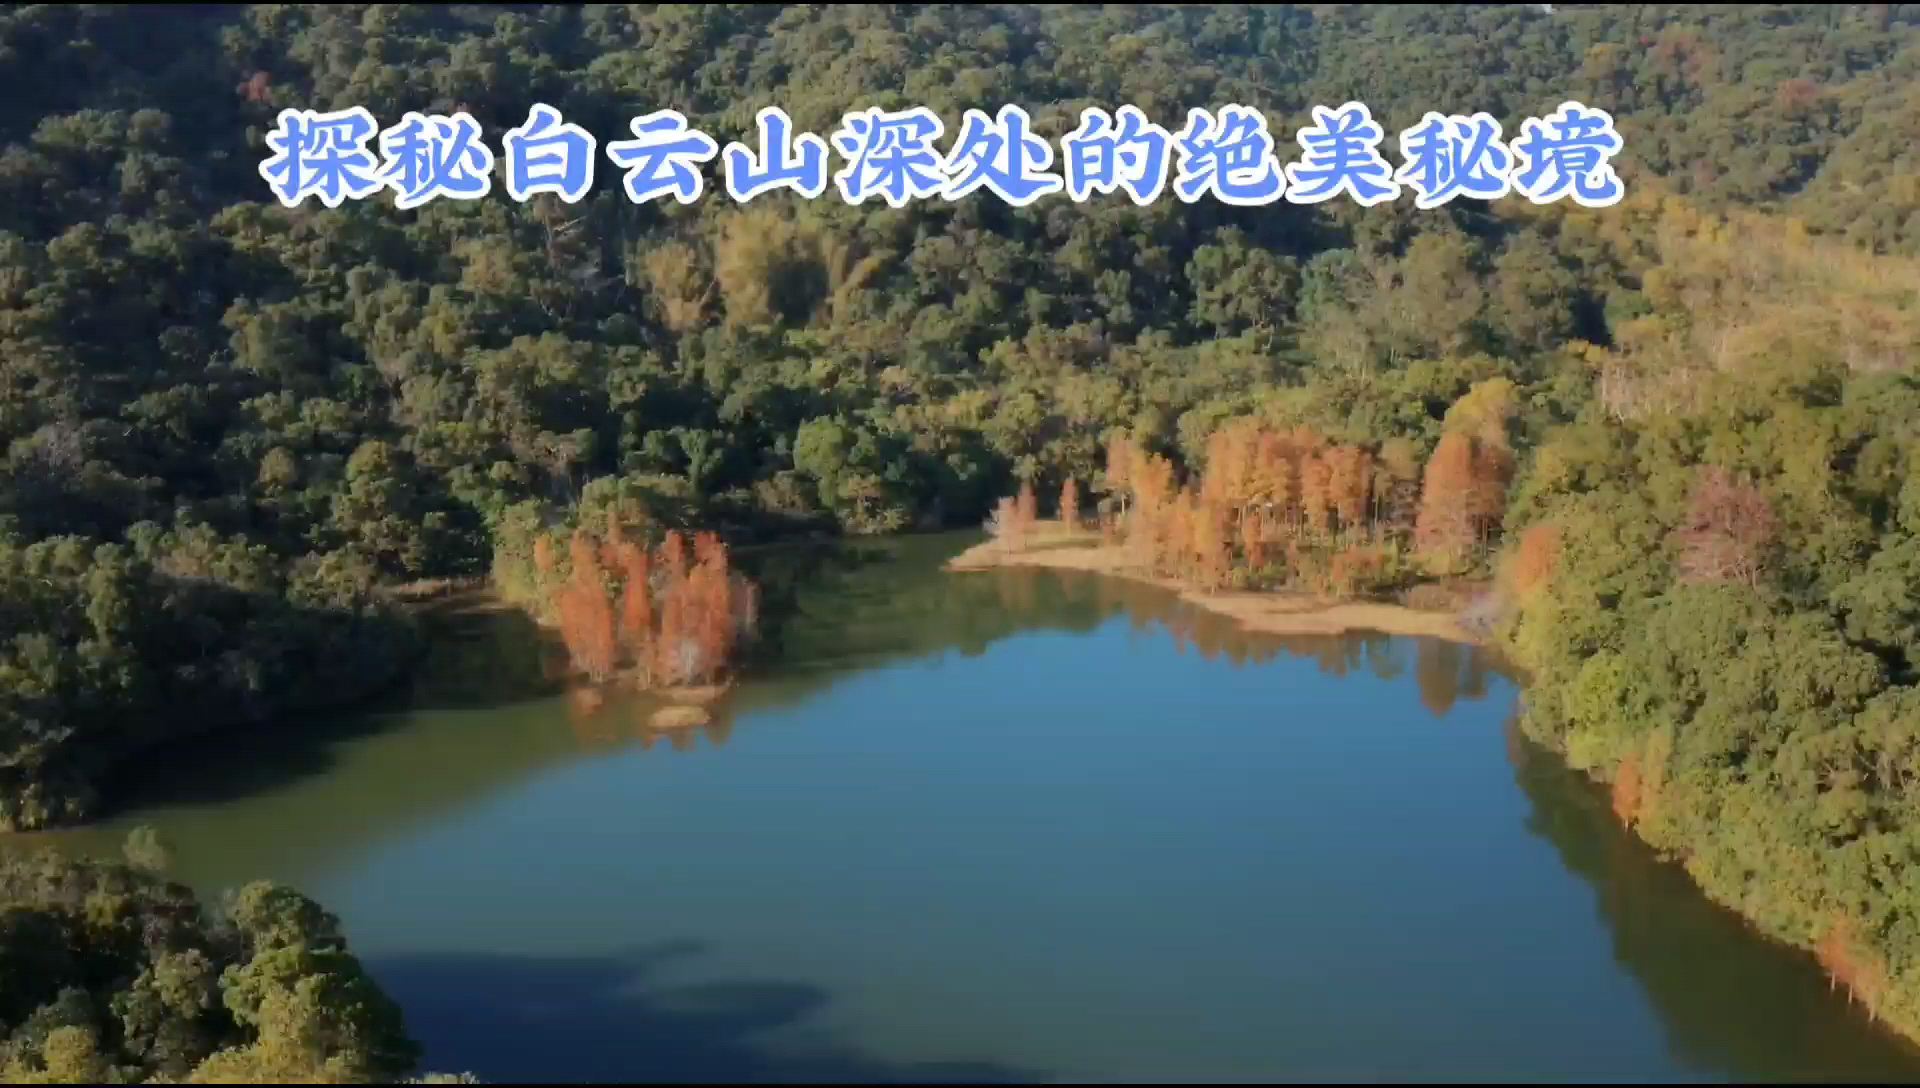 ✨【广州·黄婆洞水库】探秘白云山深处的绝美秘境🌄💫